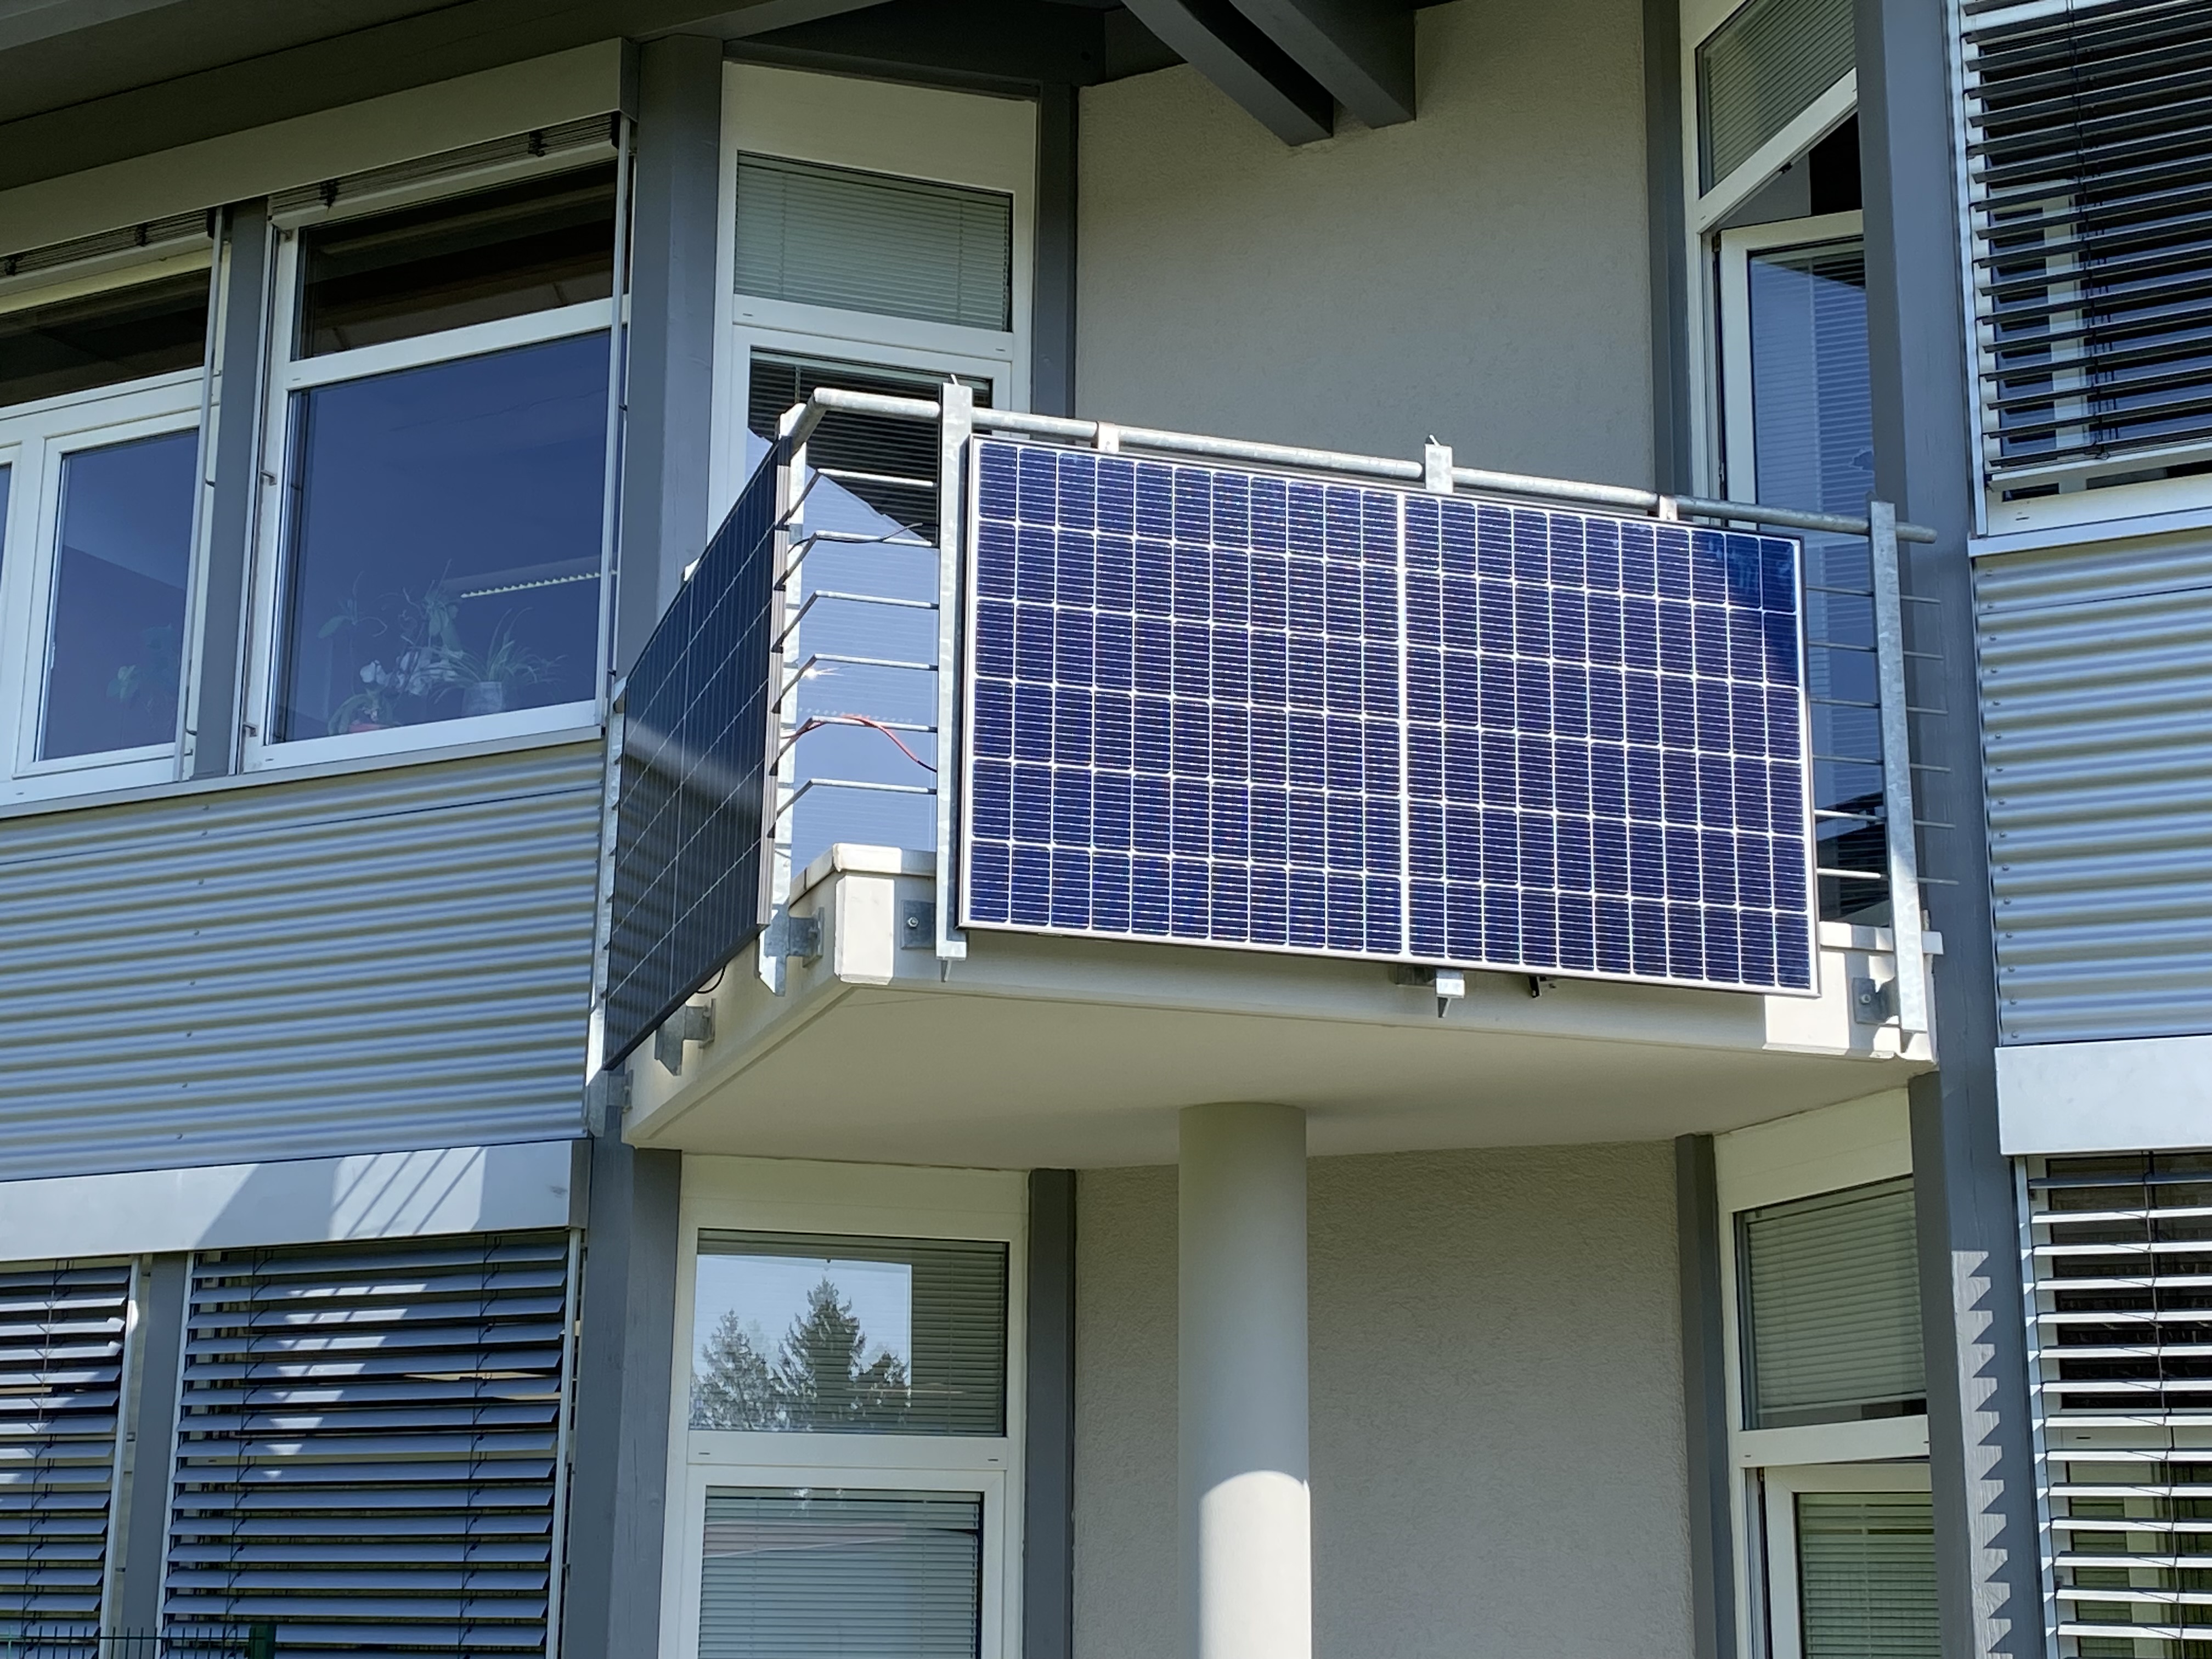 Befestigungskonstruktion (0° Grad) für Photovoltaikmodul